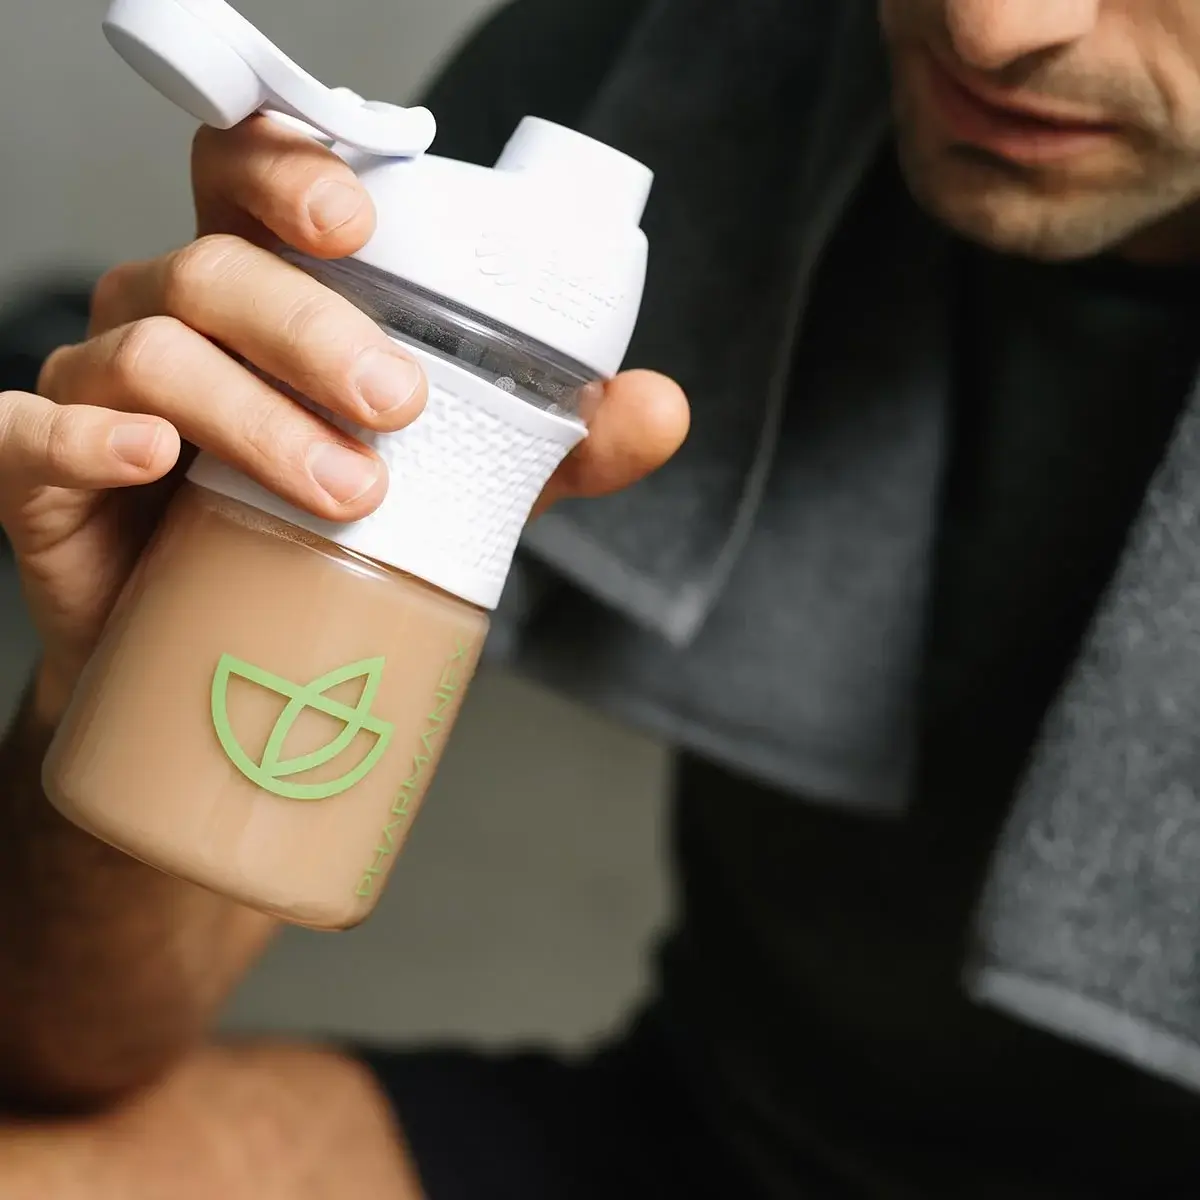 Nu Skin Pharmanex TR90 V-Shake – Veganer Proteinshake mit Vanillegeschmack